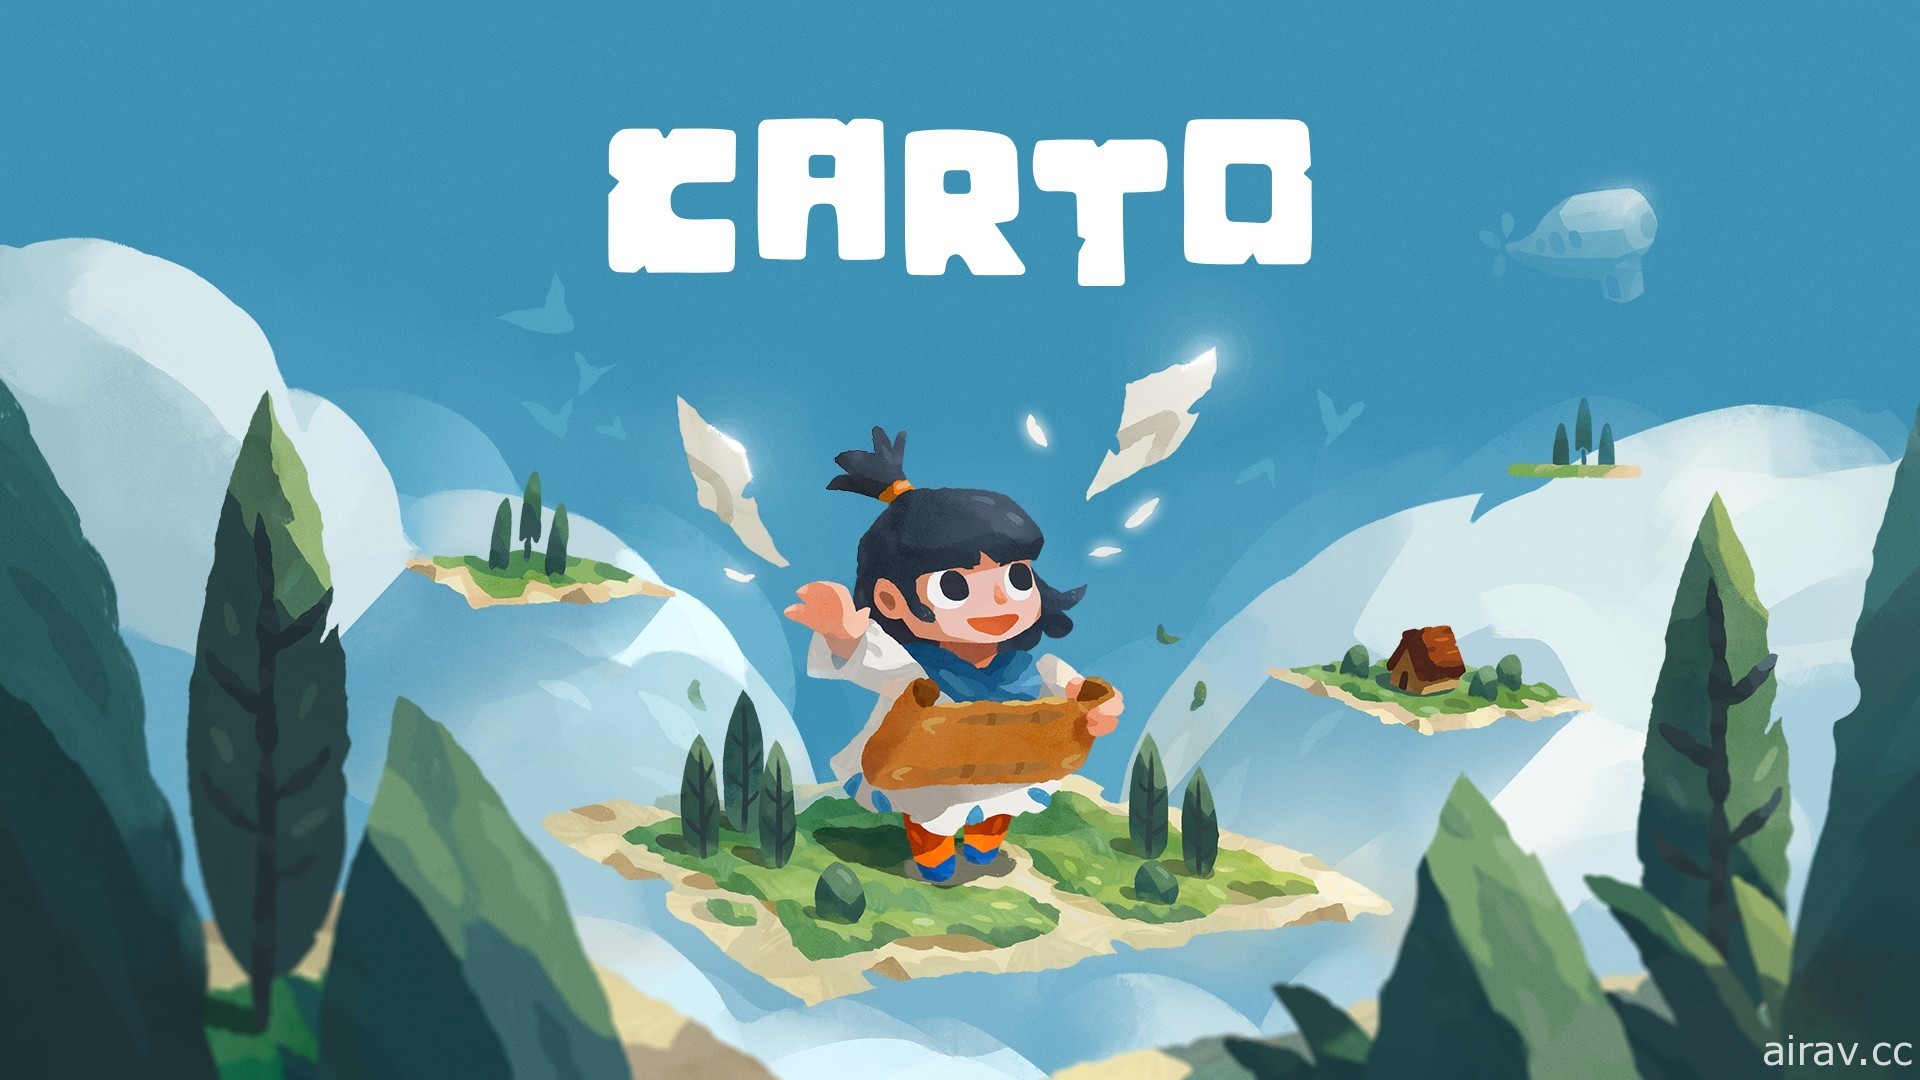 台湾独立游戏团队解谜新作《Carto》即将发售 借由重组地图探索变化多端的世界